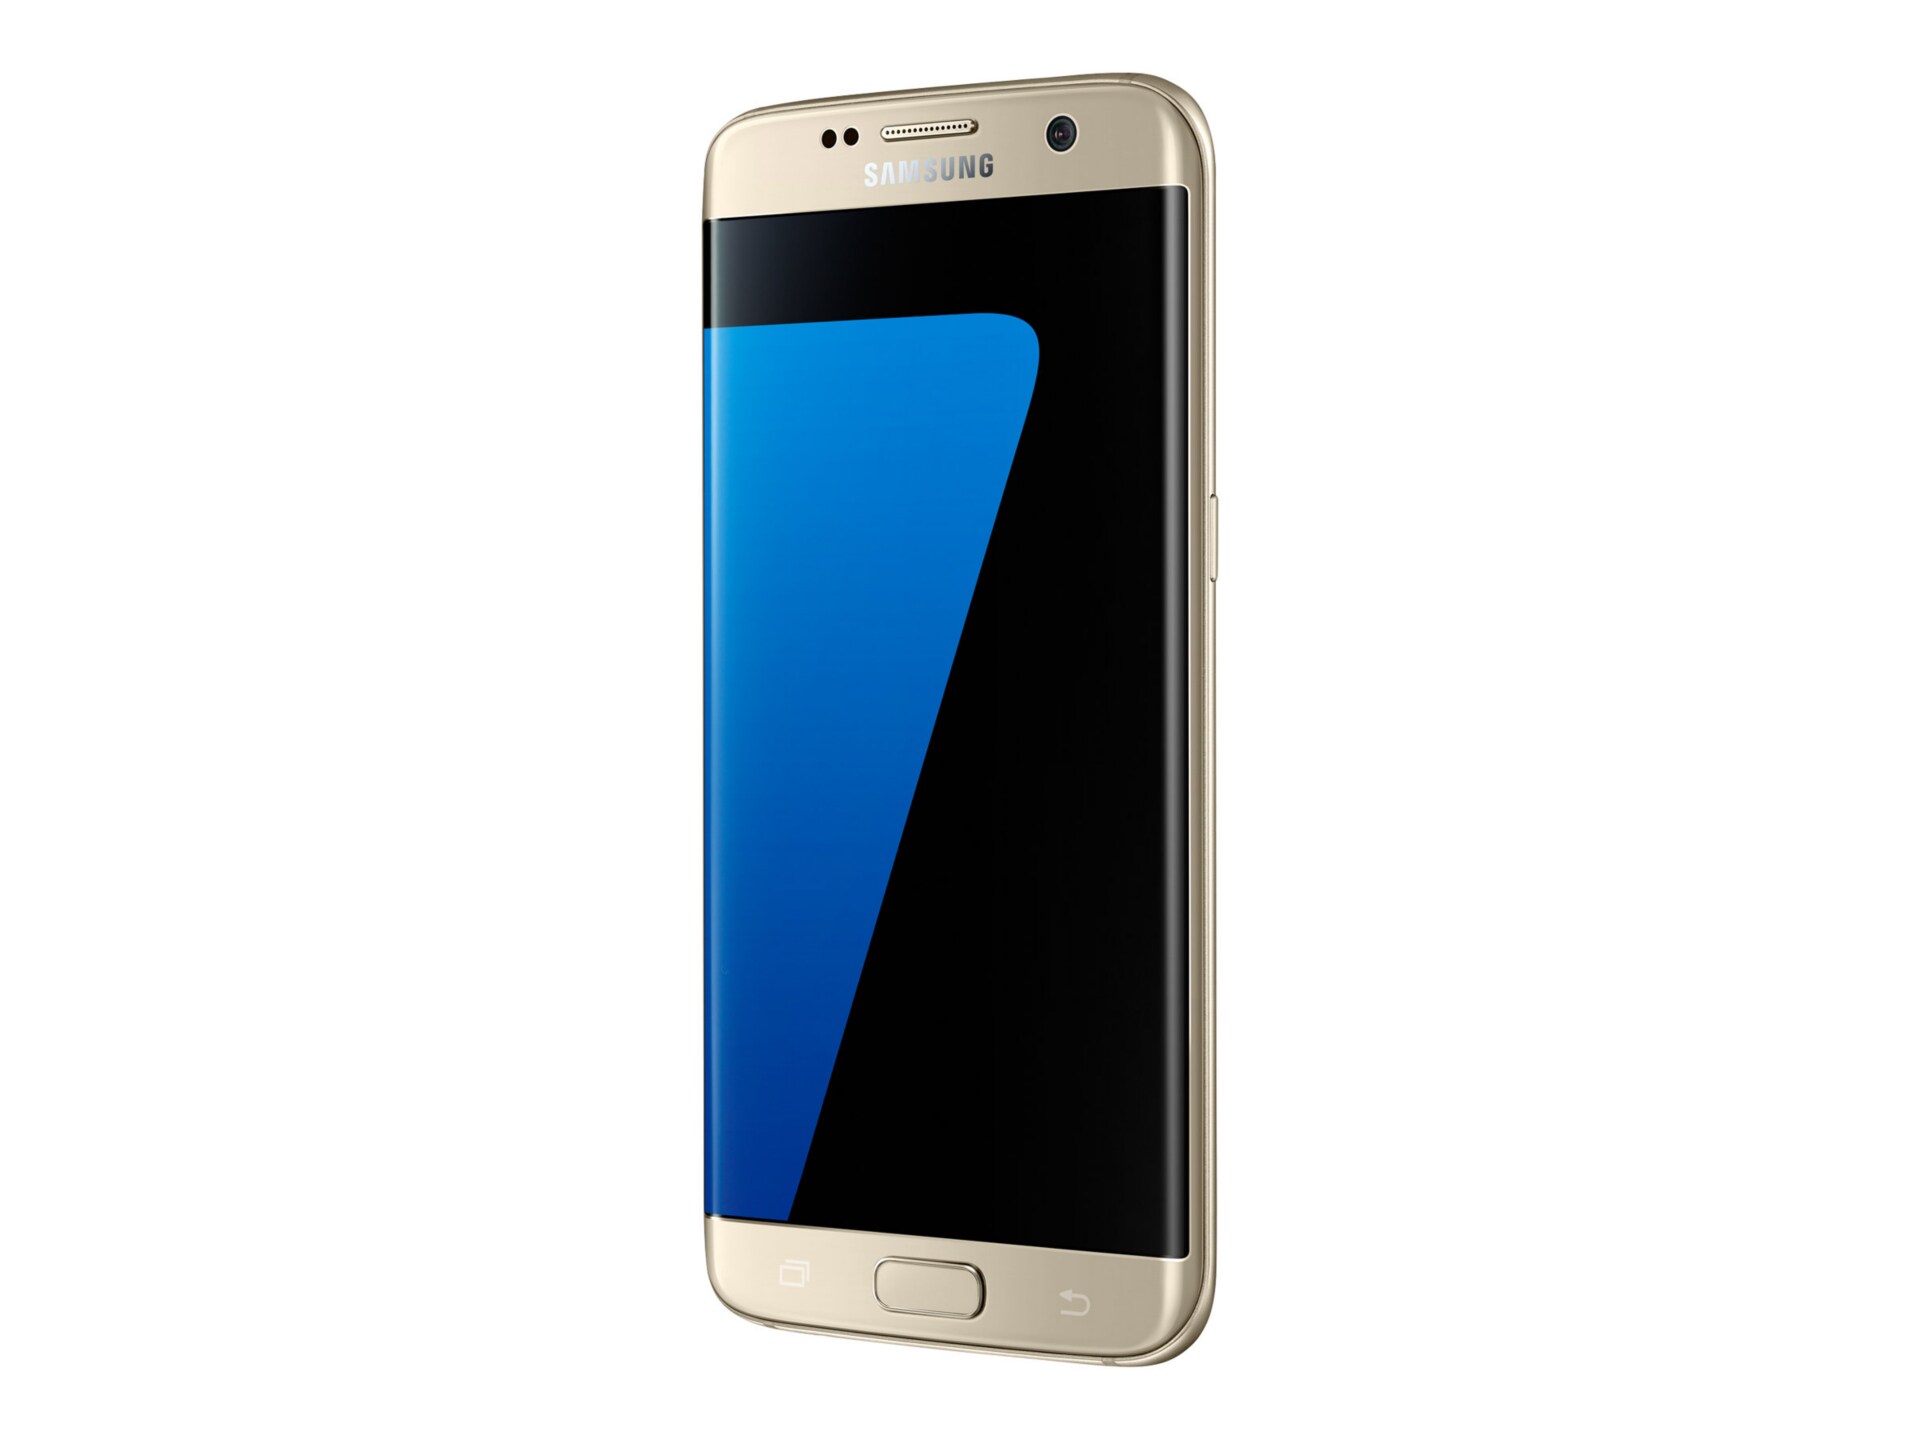 Samsung Galaxy S7 edge - SM-G935V - platinum gold - 4G HSPA+ - 32 GB - CDMA / GSM - smartphone